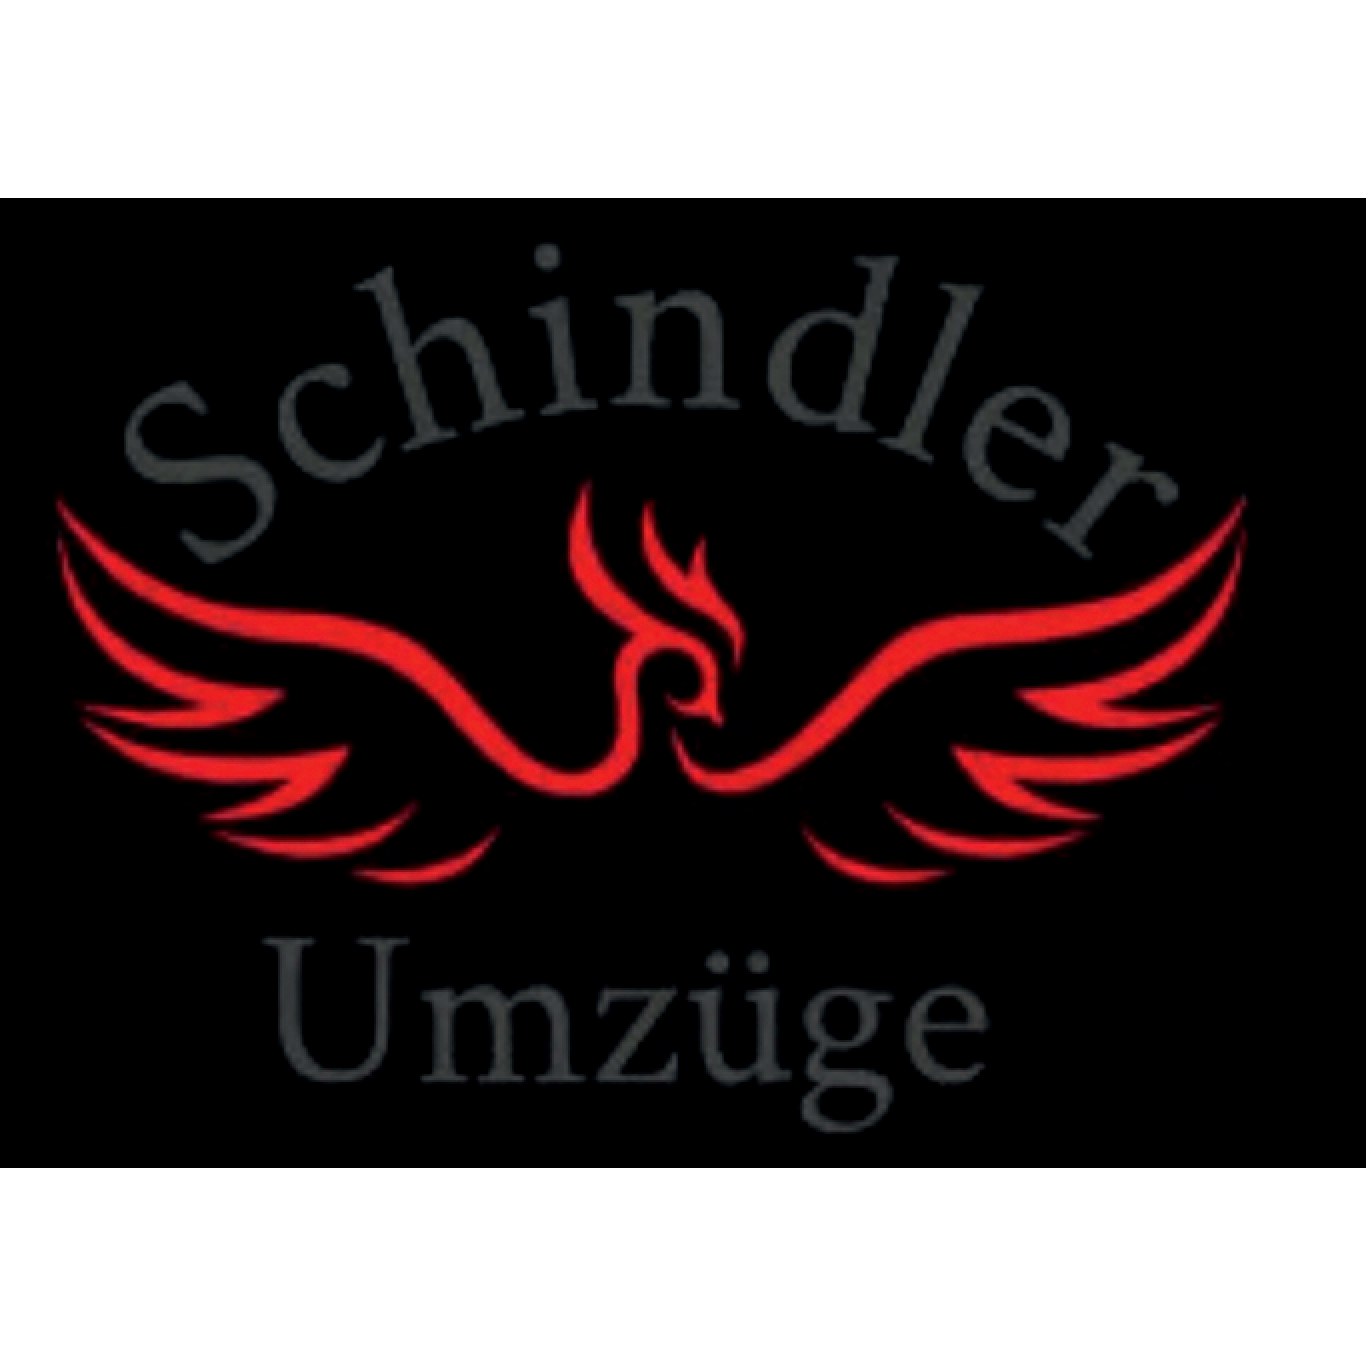 Schindler Umzüge in Berlin - Logo